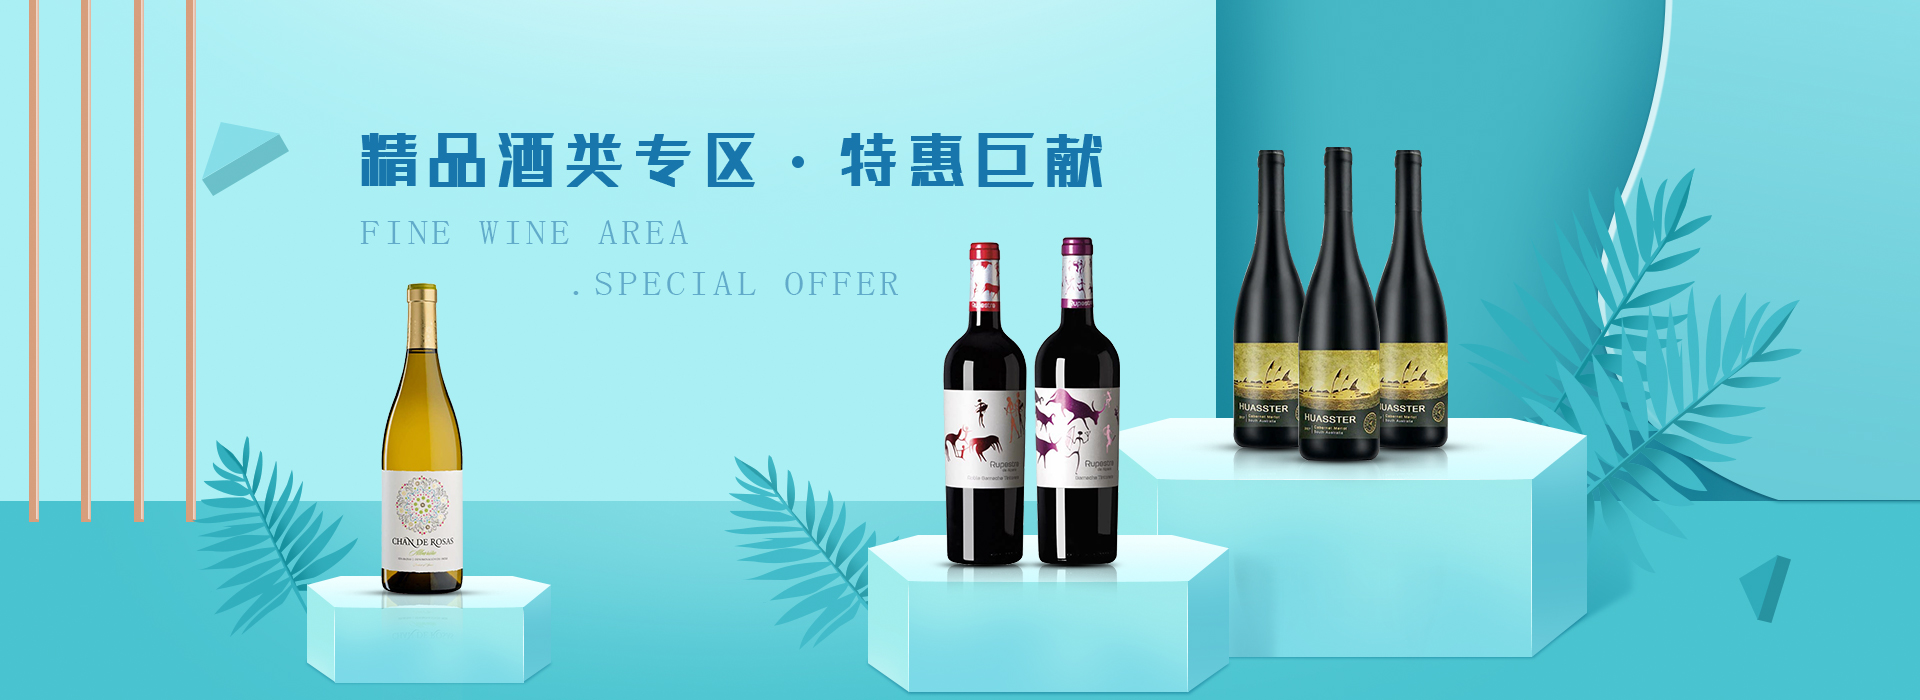 我们推荐进口葡萄酒零售利润_葡萄酒相关-福莱沃酒业广州有限公司